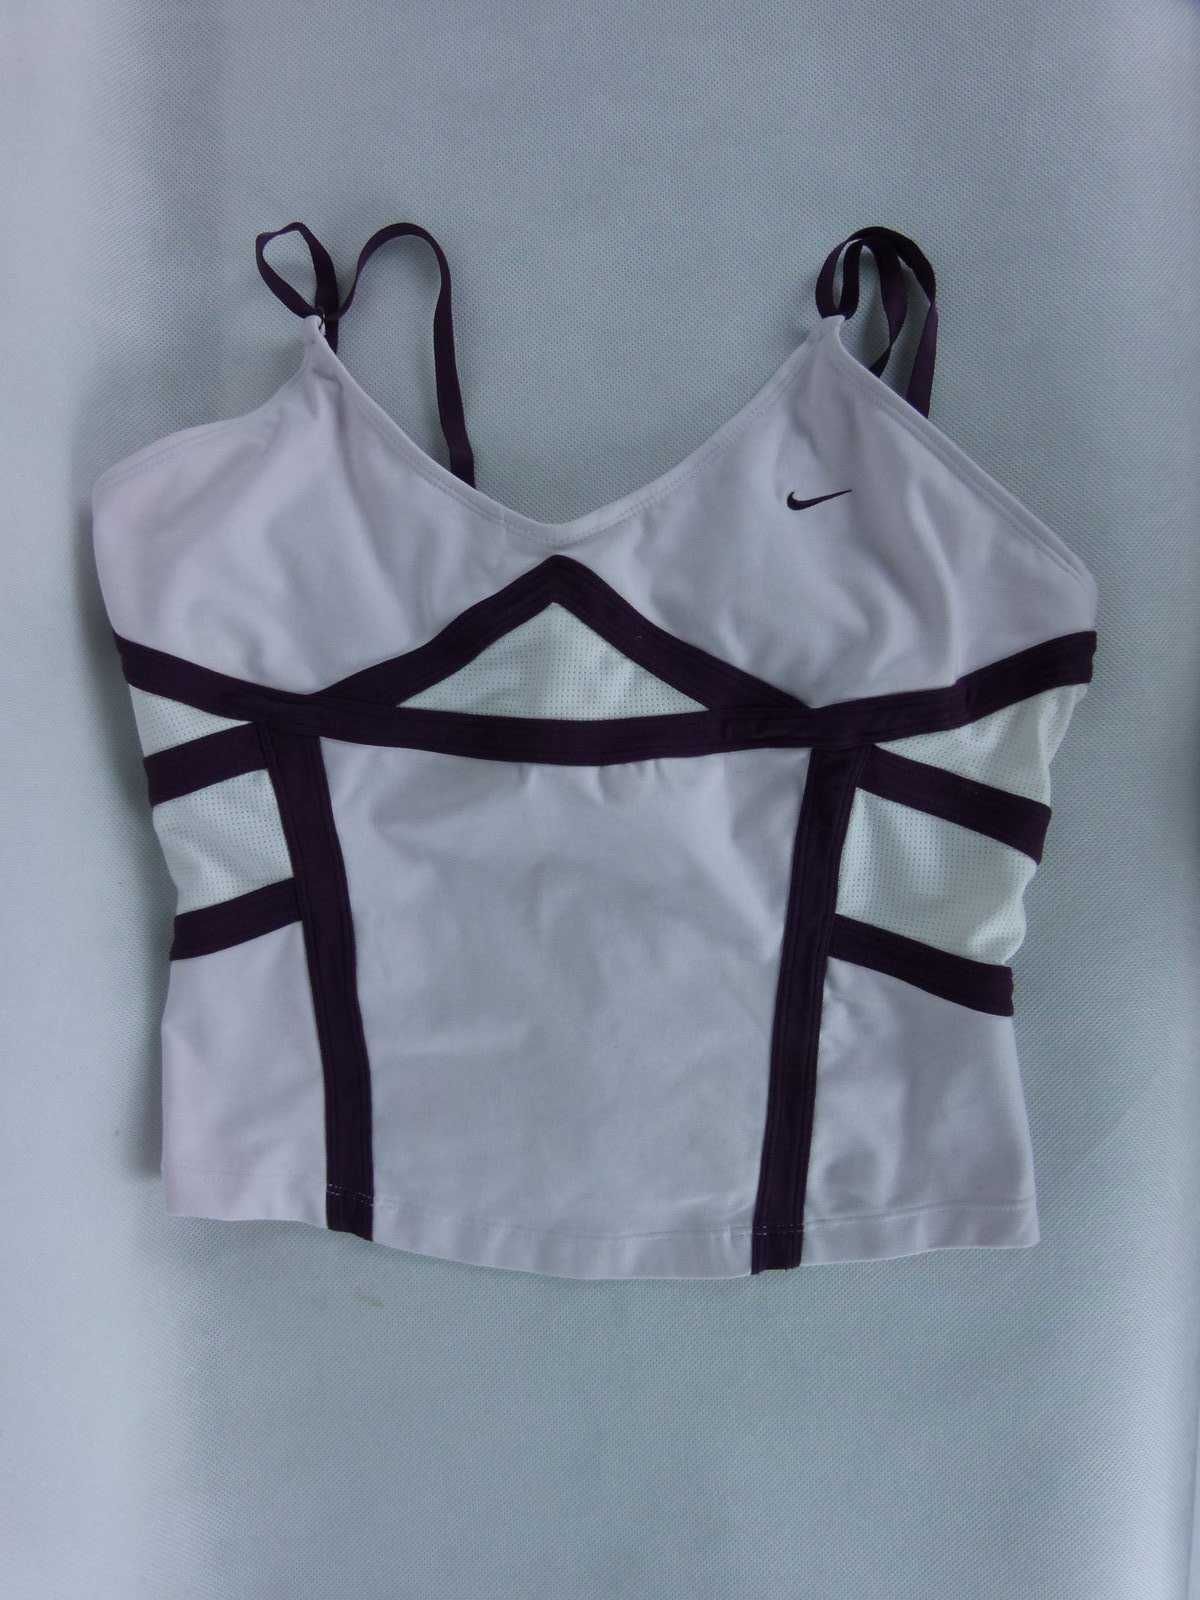 Nike Dri-Fit sportowy top / L - 173 cm